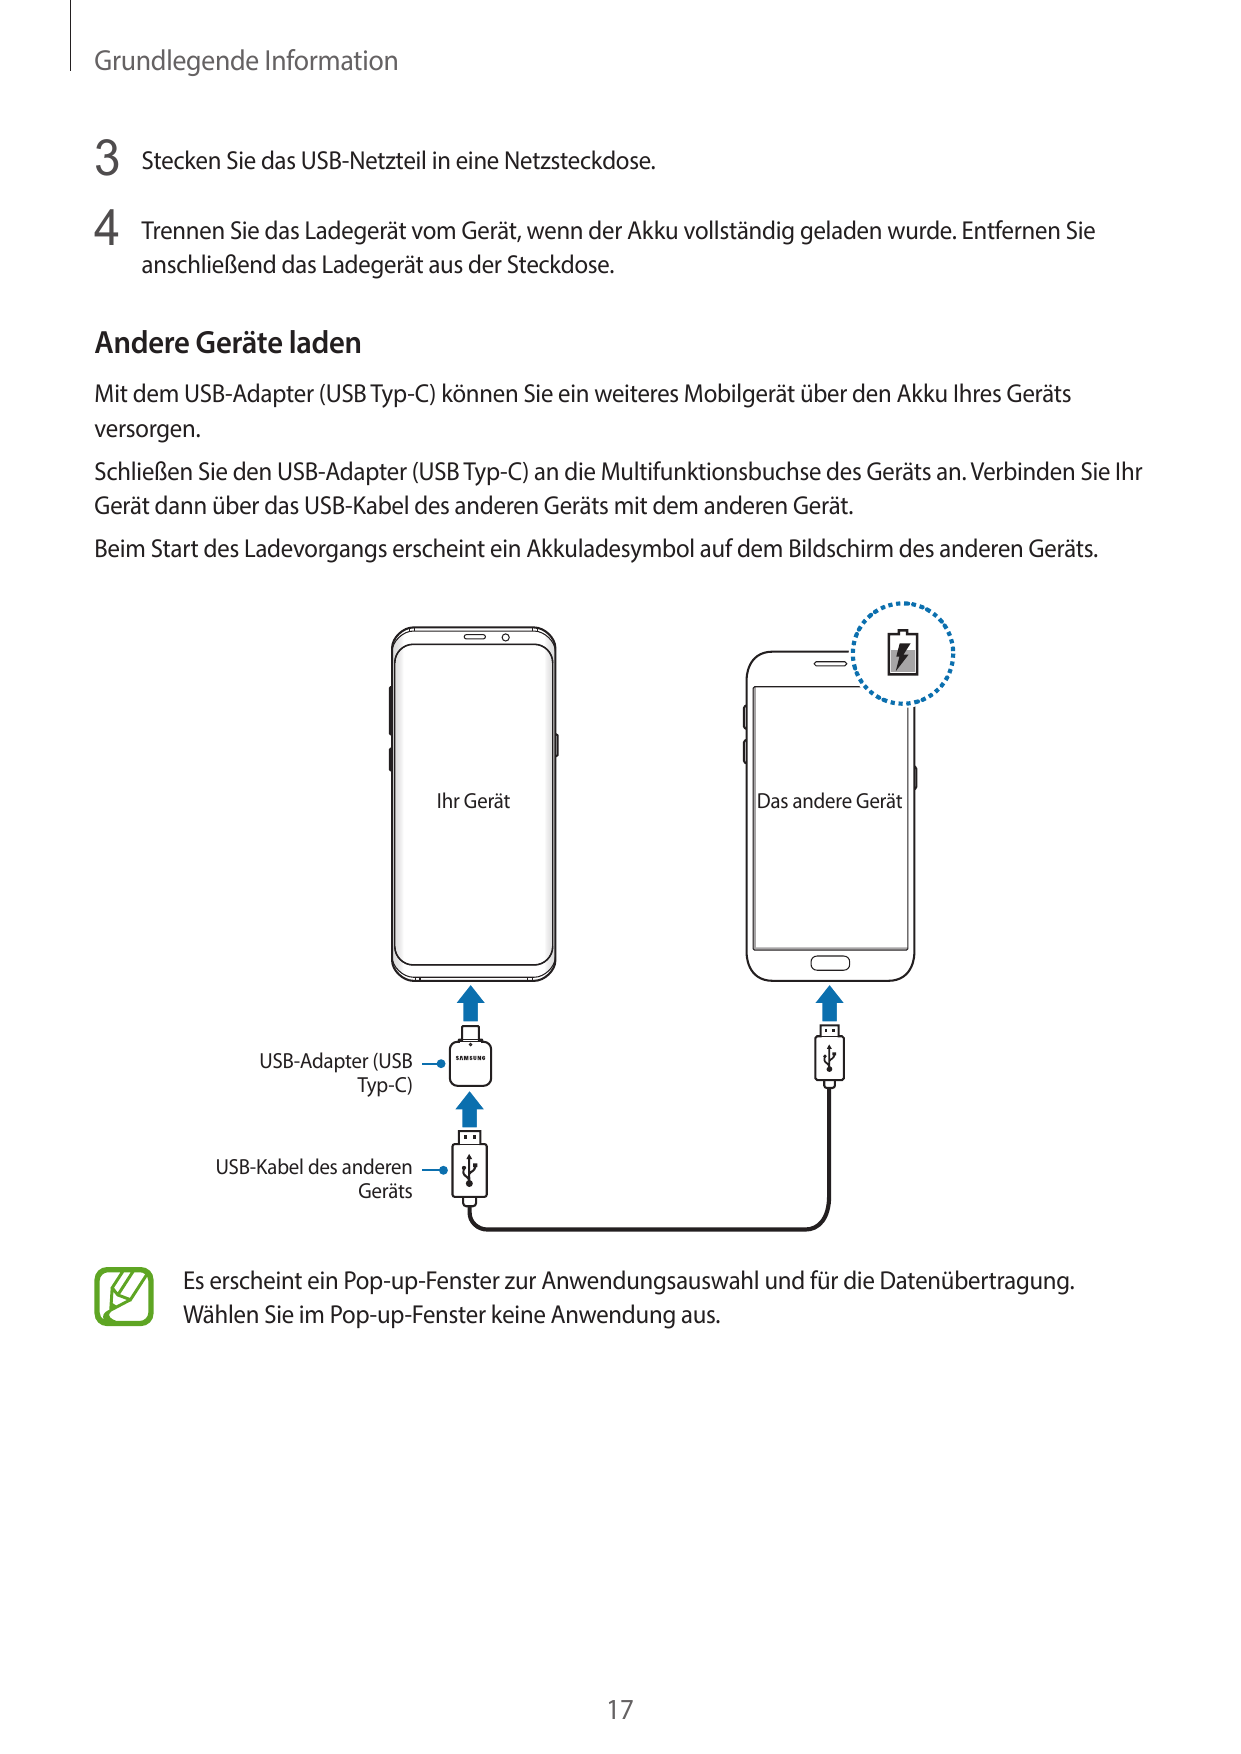 Grundlegende Information3 Stecken Sie das USB-Netzteil in eine Netzsteckdose.4 Trennen Sie das Ladegerät vom Gerät, wenn der Akk